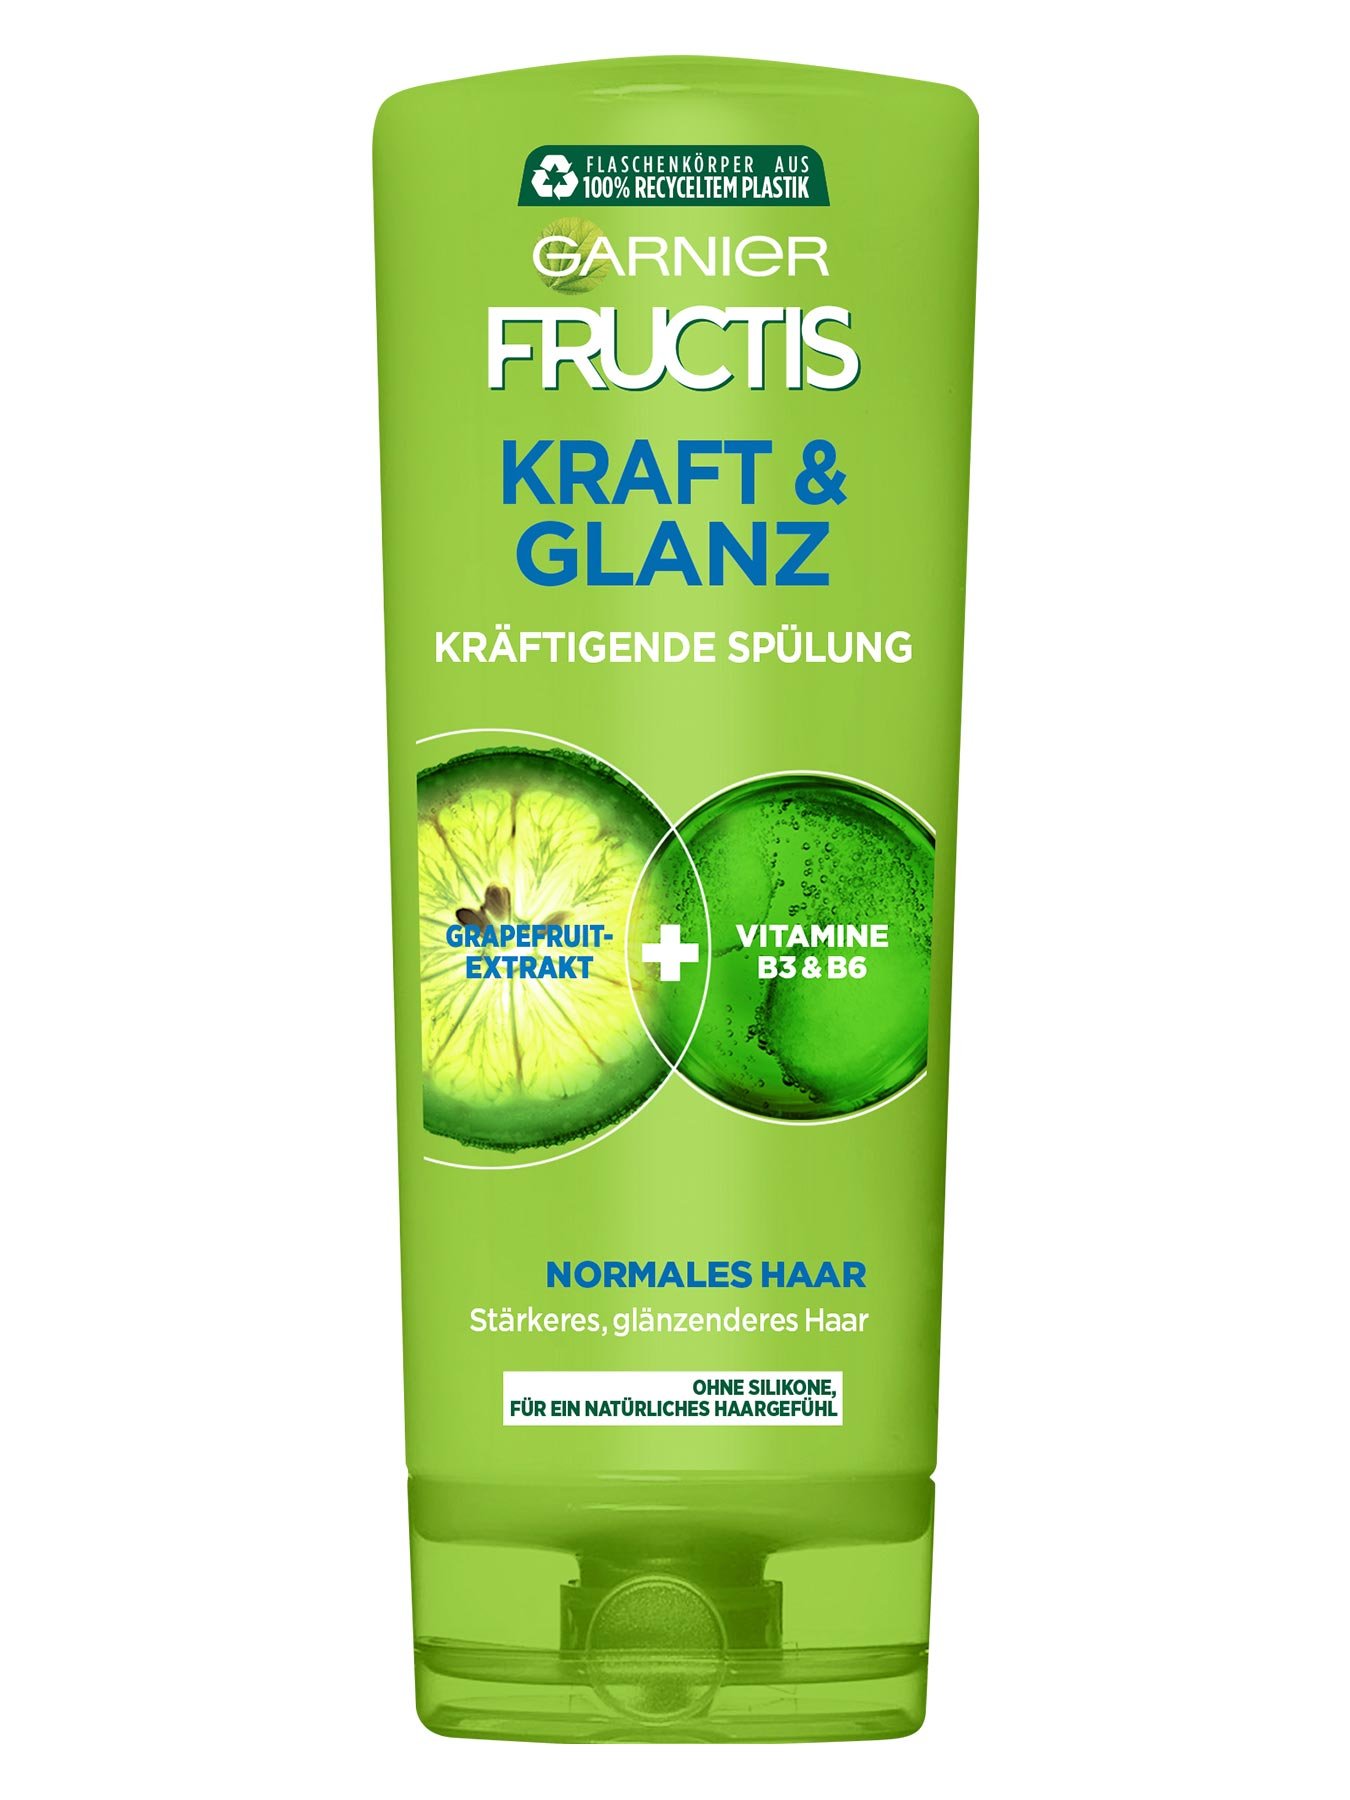 Garnier Fructis Kraft & Glanz Kräftigende Spülung Produktbild